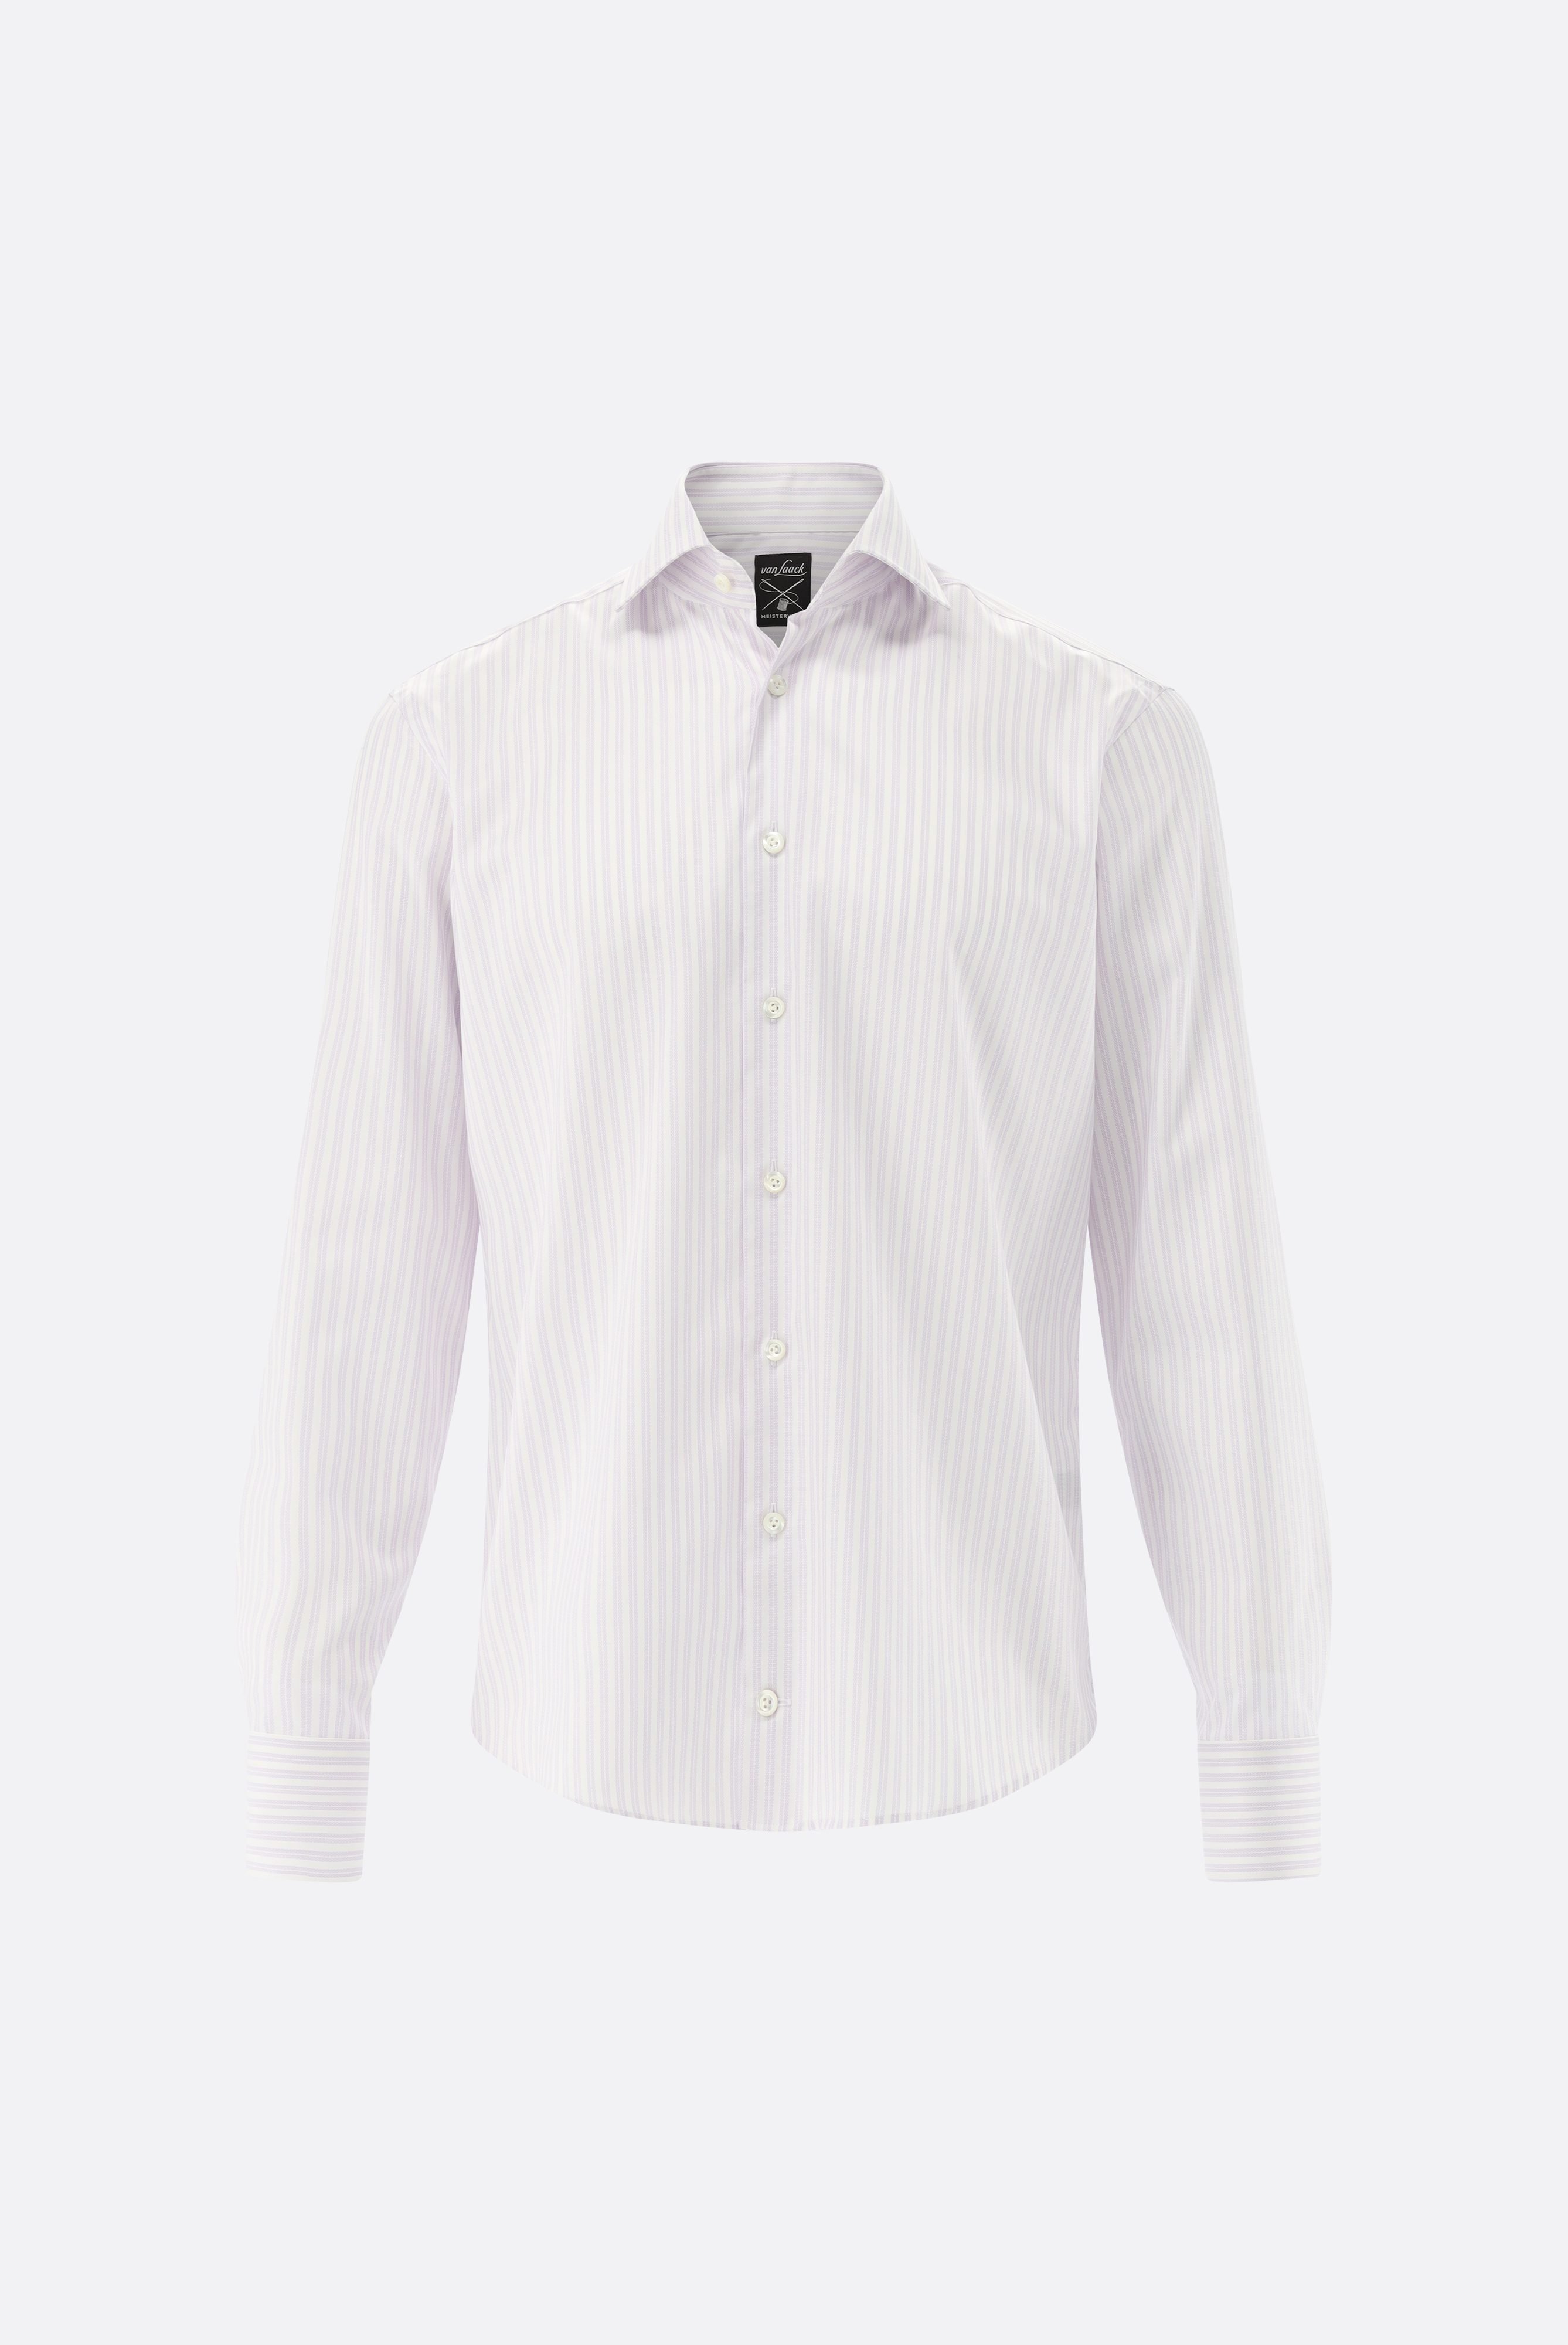 Bügelleichte Hemden+Bügelfreies Hemd mit Streifen Tailor Fit+20.2020.BQ.161106.006.43